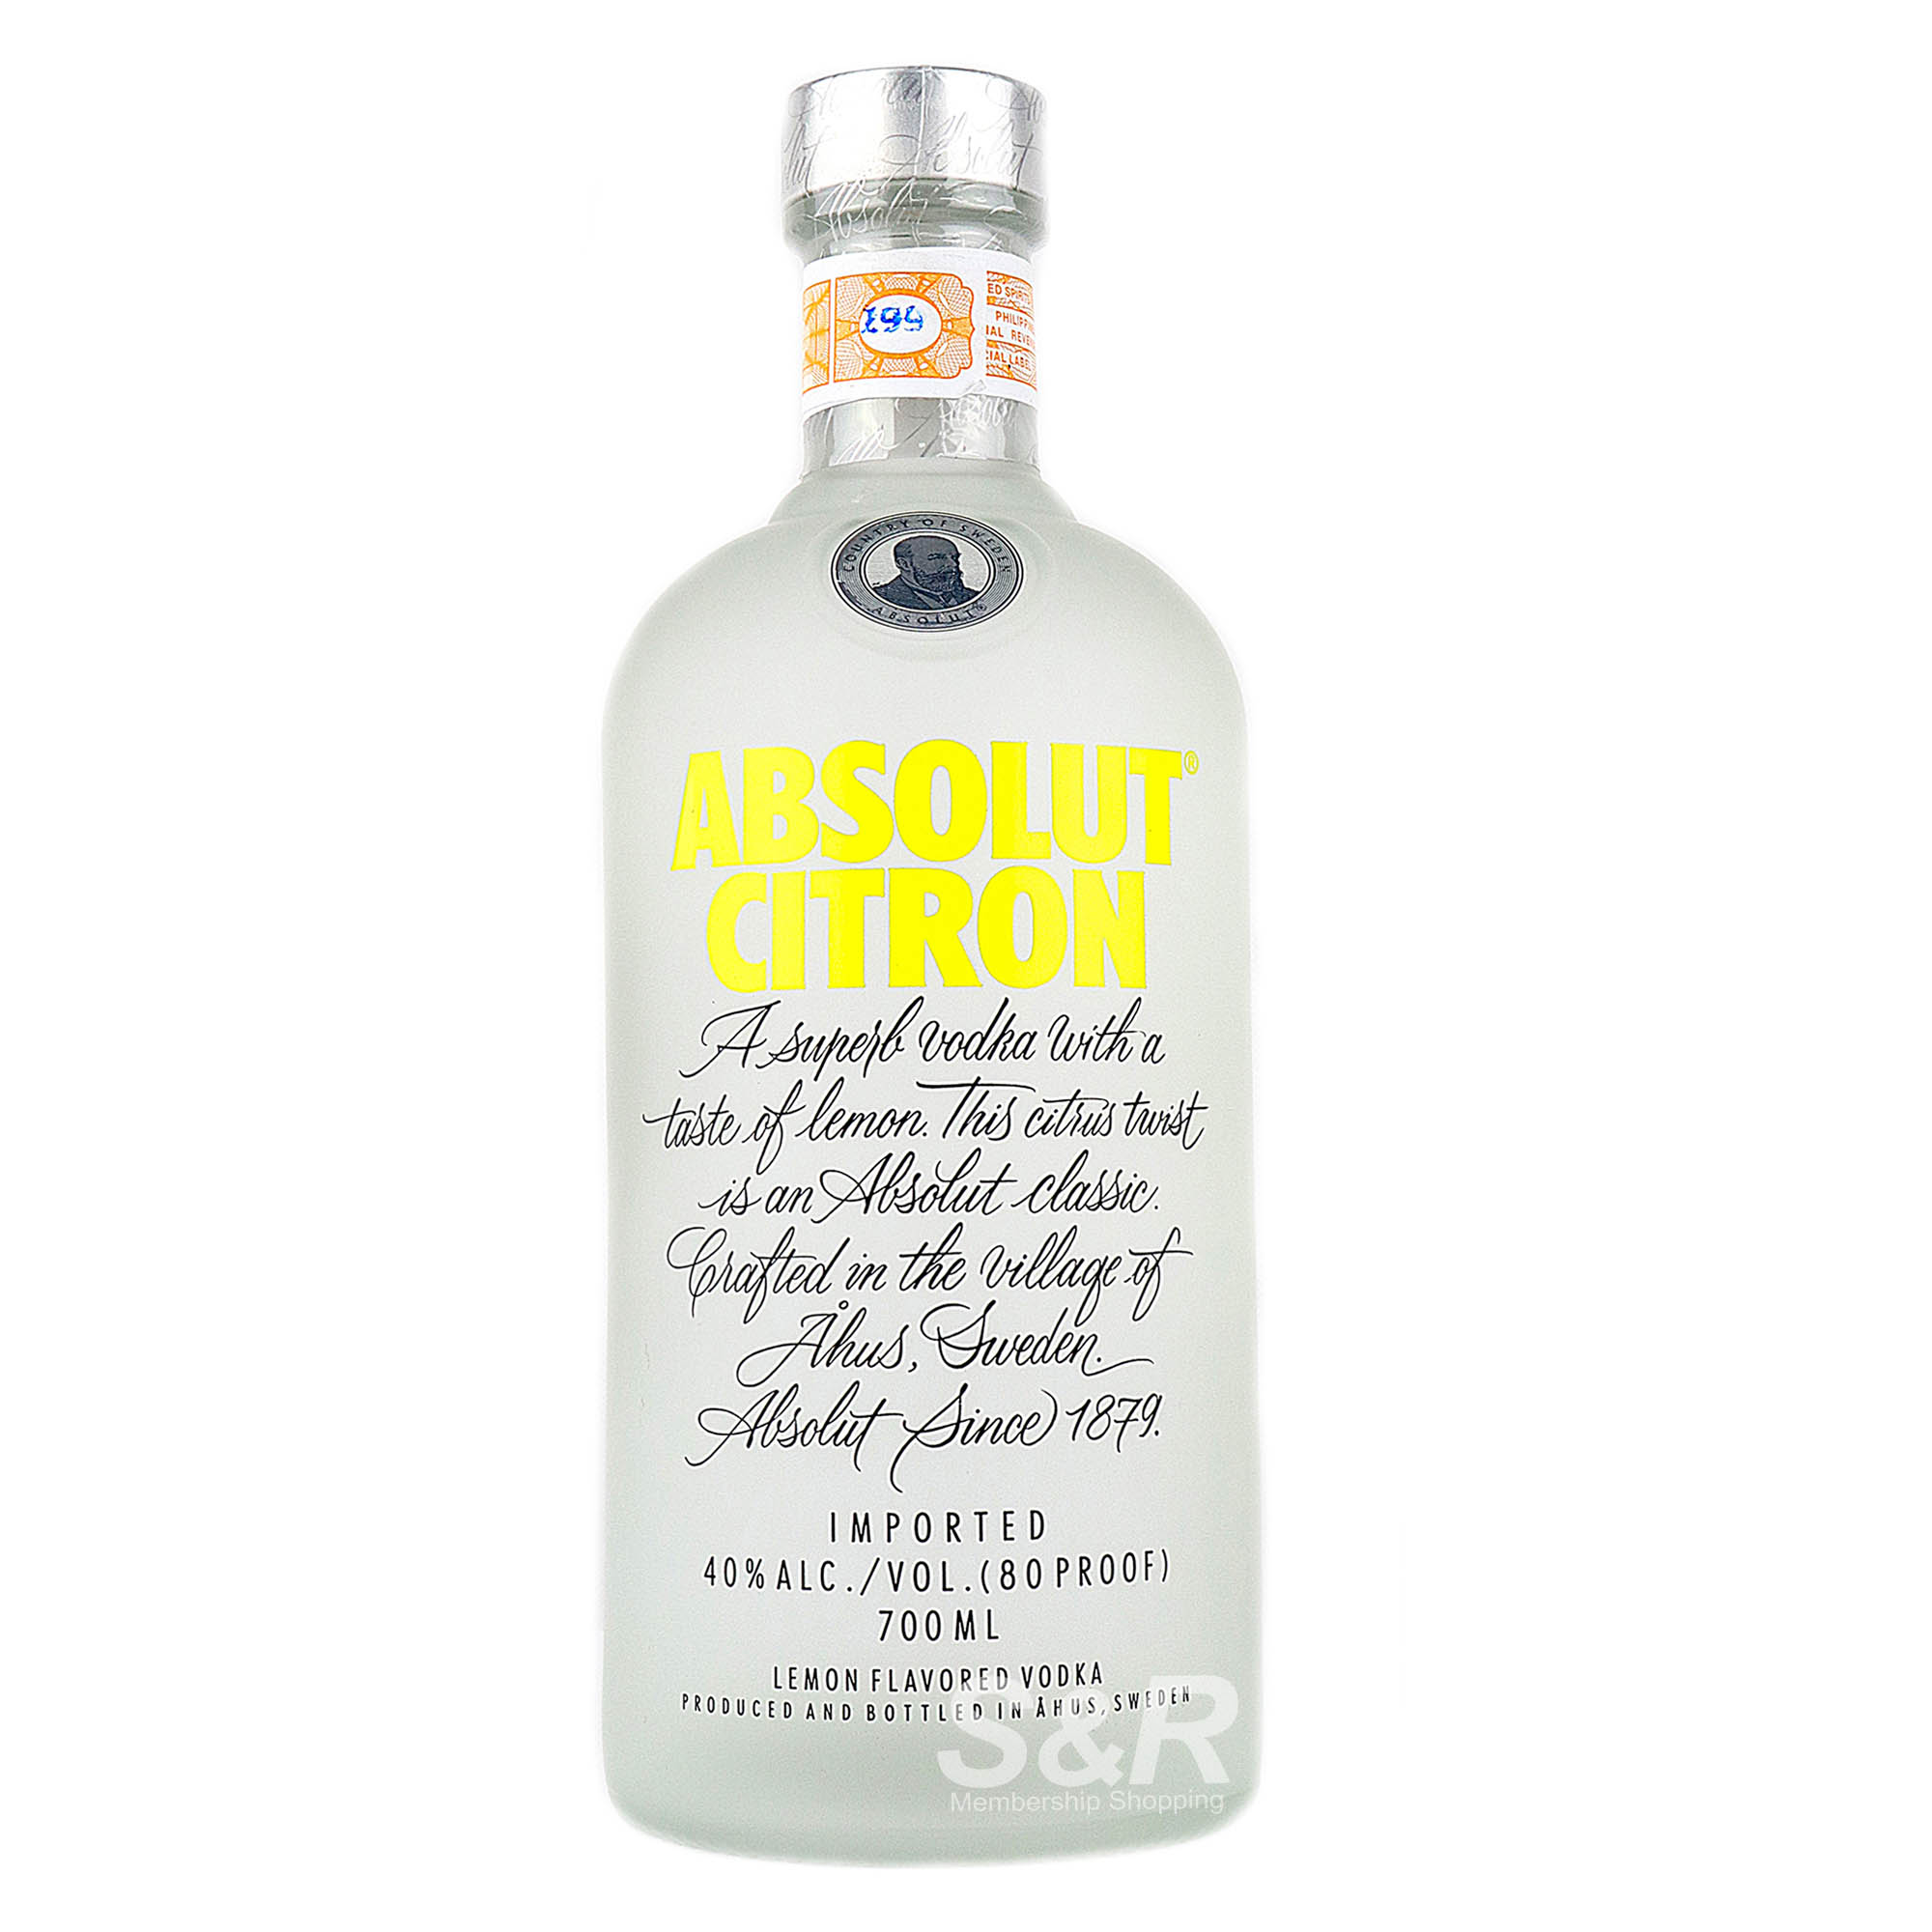 Absolut Citron Lemon Flavored Vodka 700mL